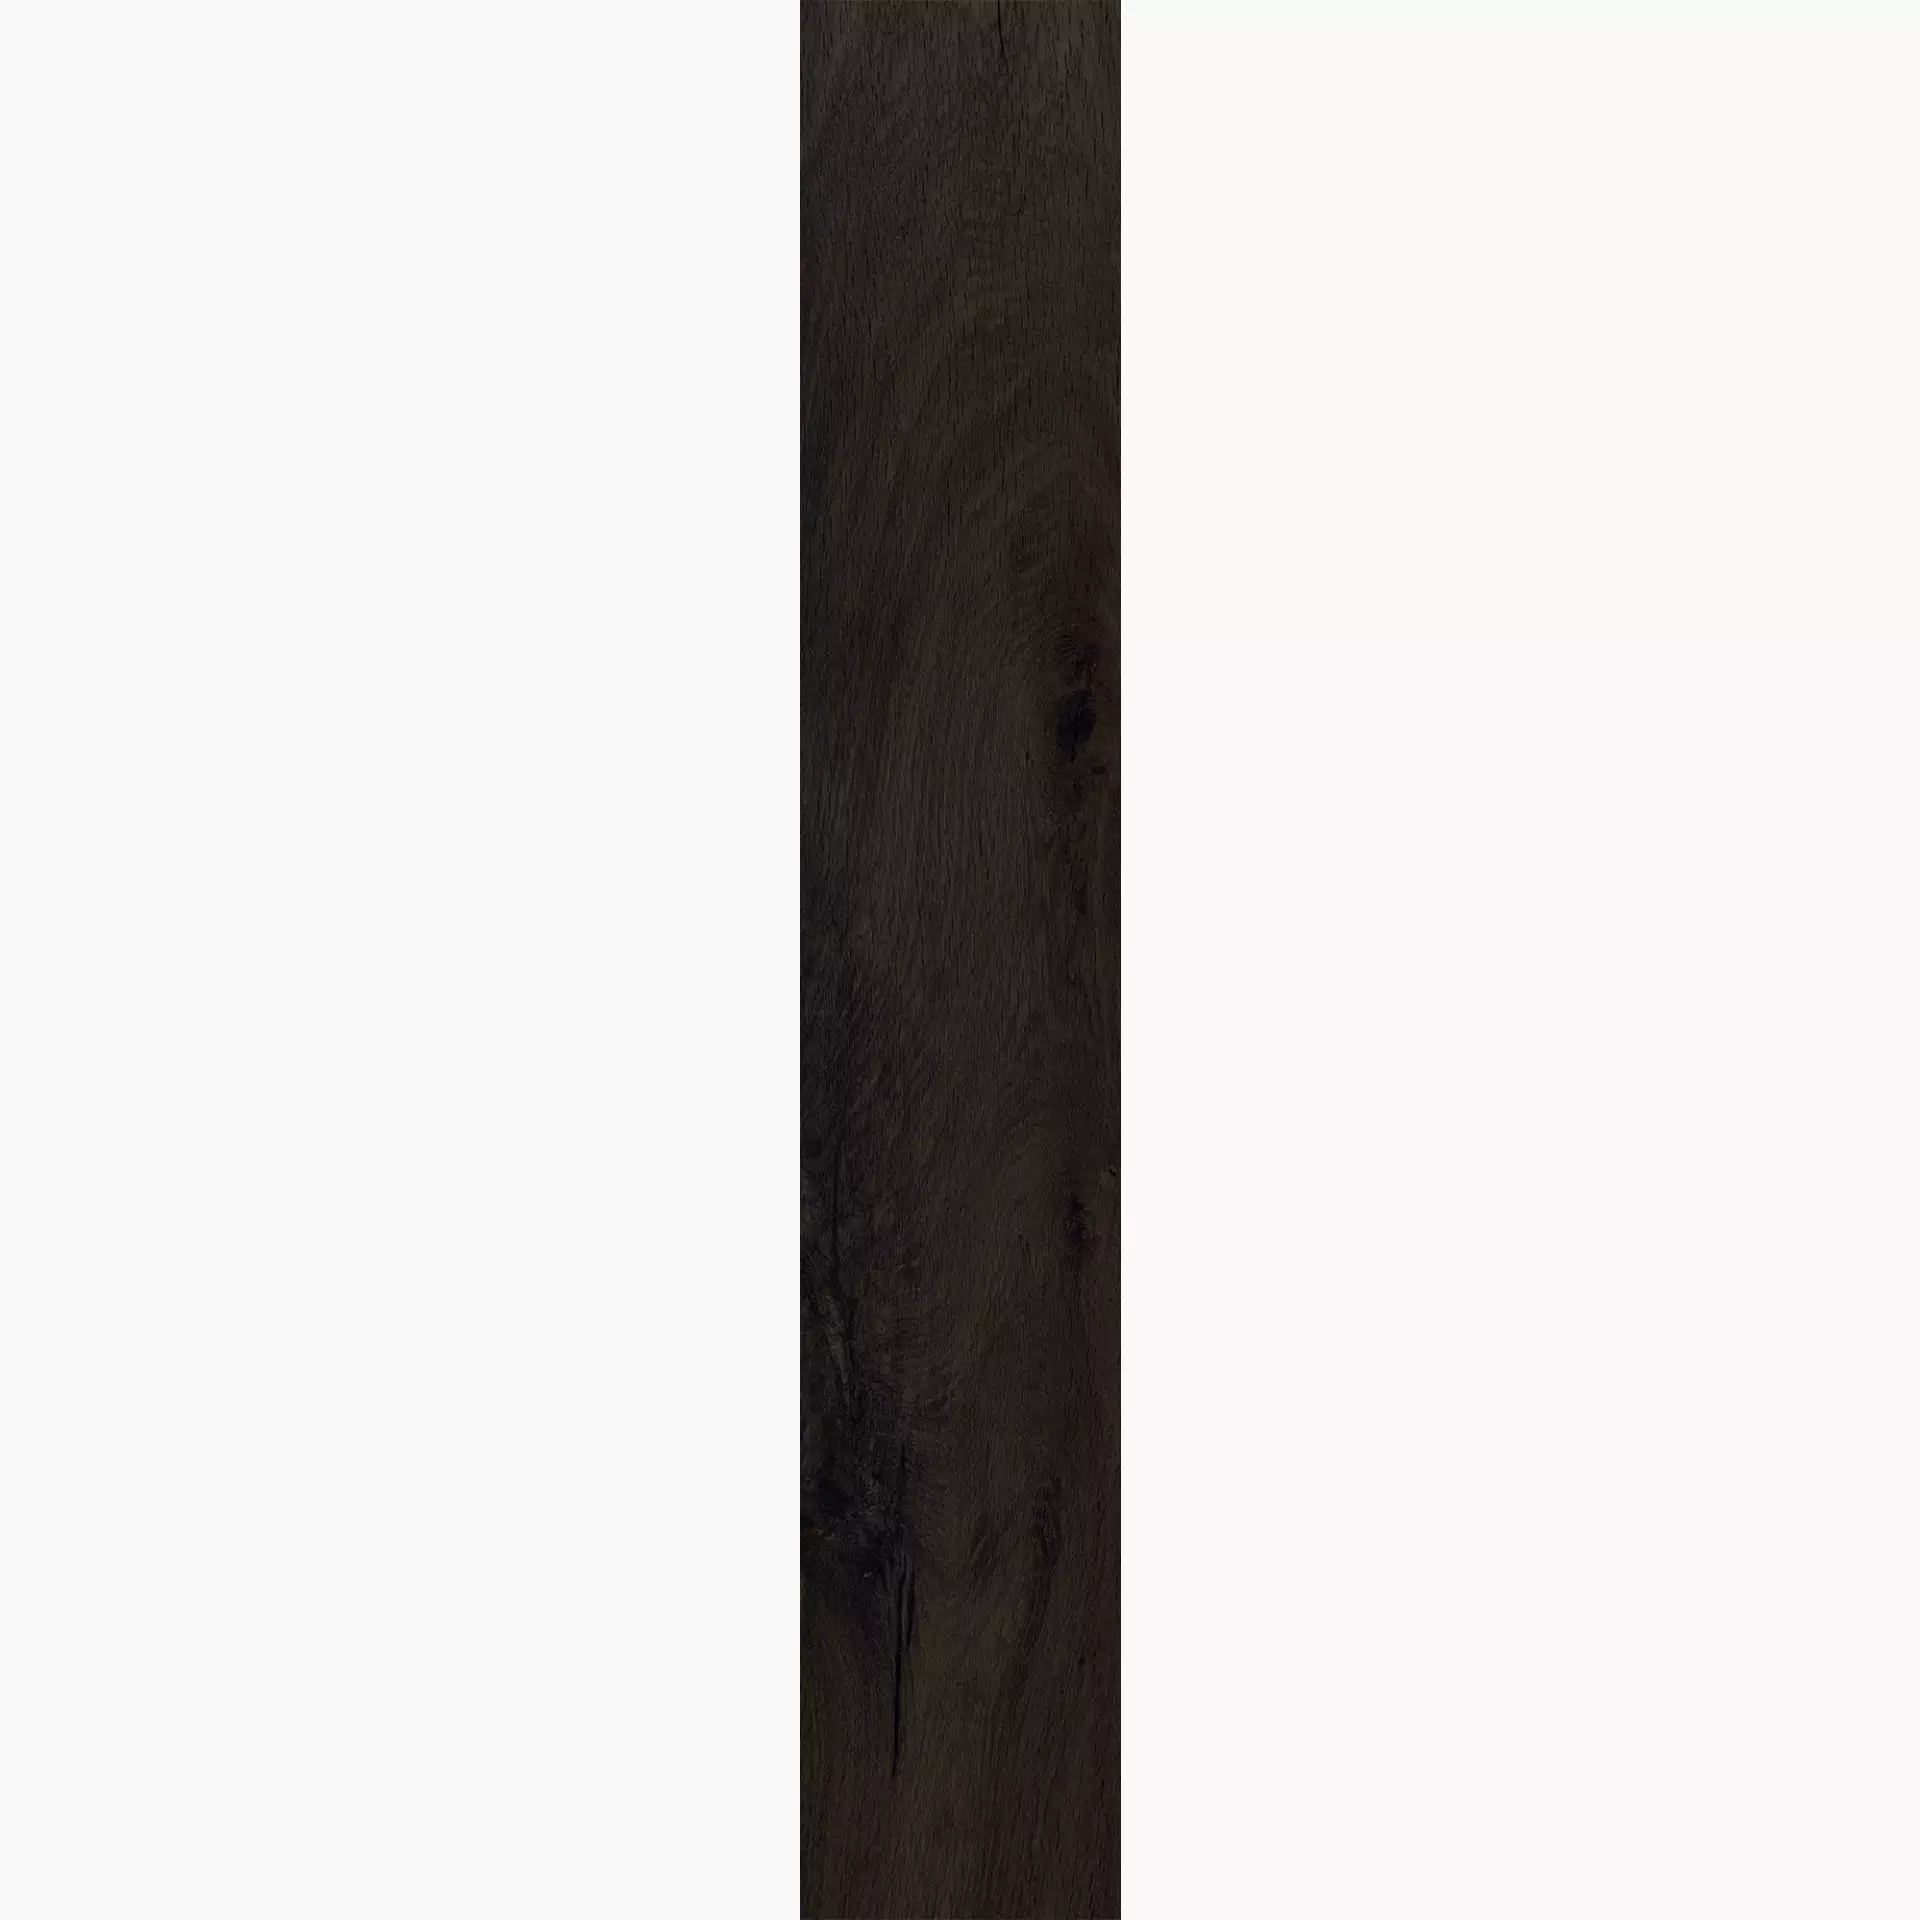 Caesar Arthis Royal Naturale – Matt Royal AD5G matt natur 20x120cm rektifiziert 9mm